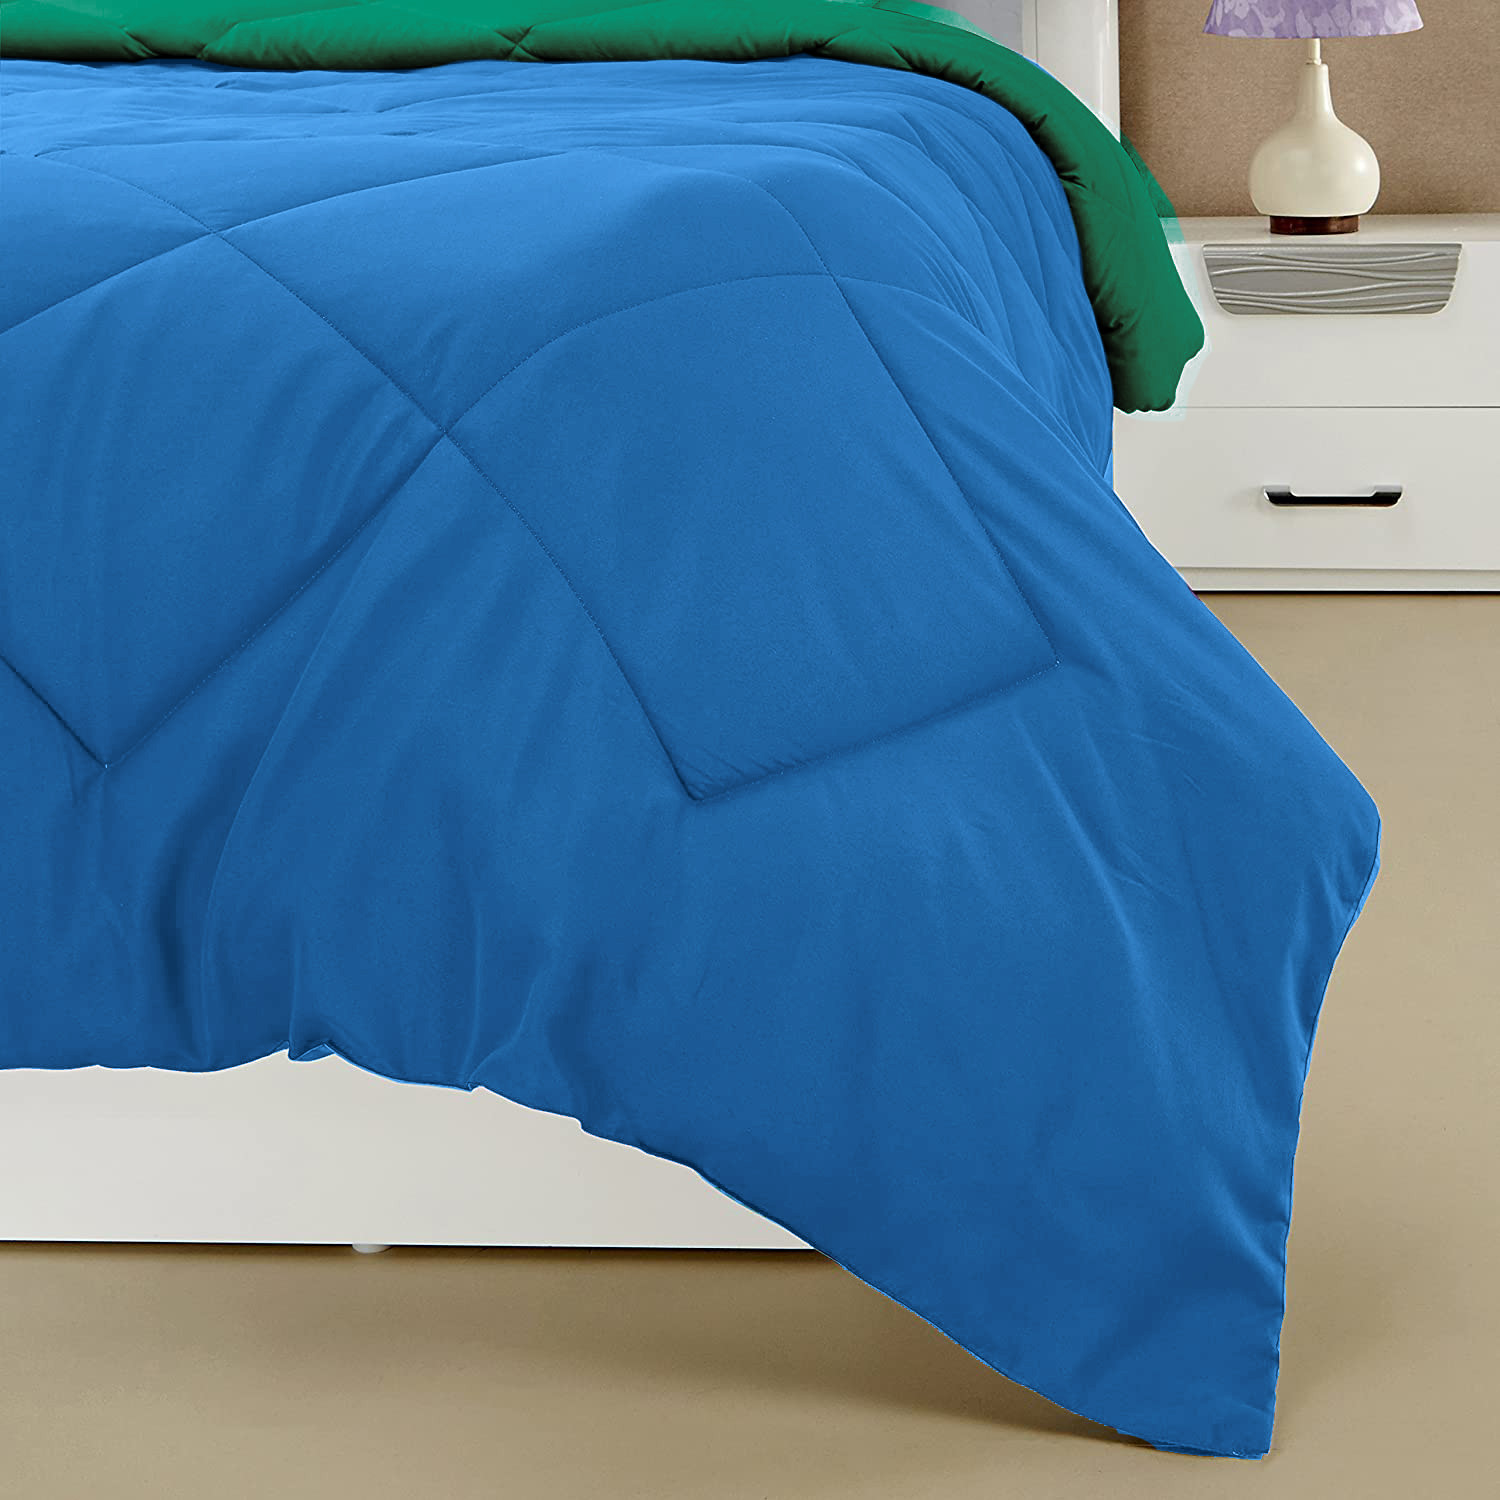 Kuber Industries Comforter for Double Bed|Microfiber Winter Comforter for Double Bed|220 GSM Reversible Comforter|AC Quilt|Dohar|Blanket |Sky Blue & Green